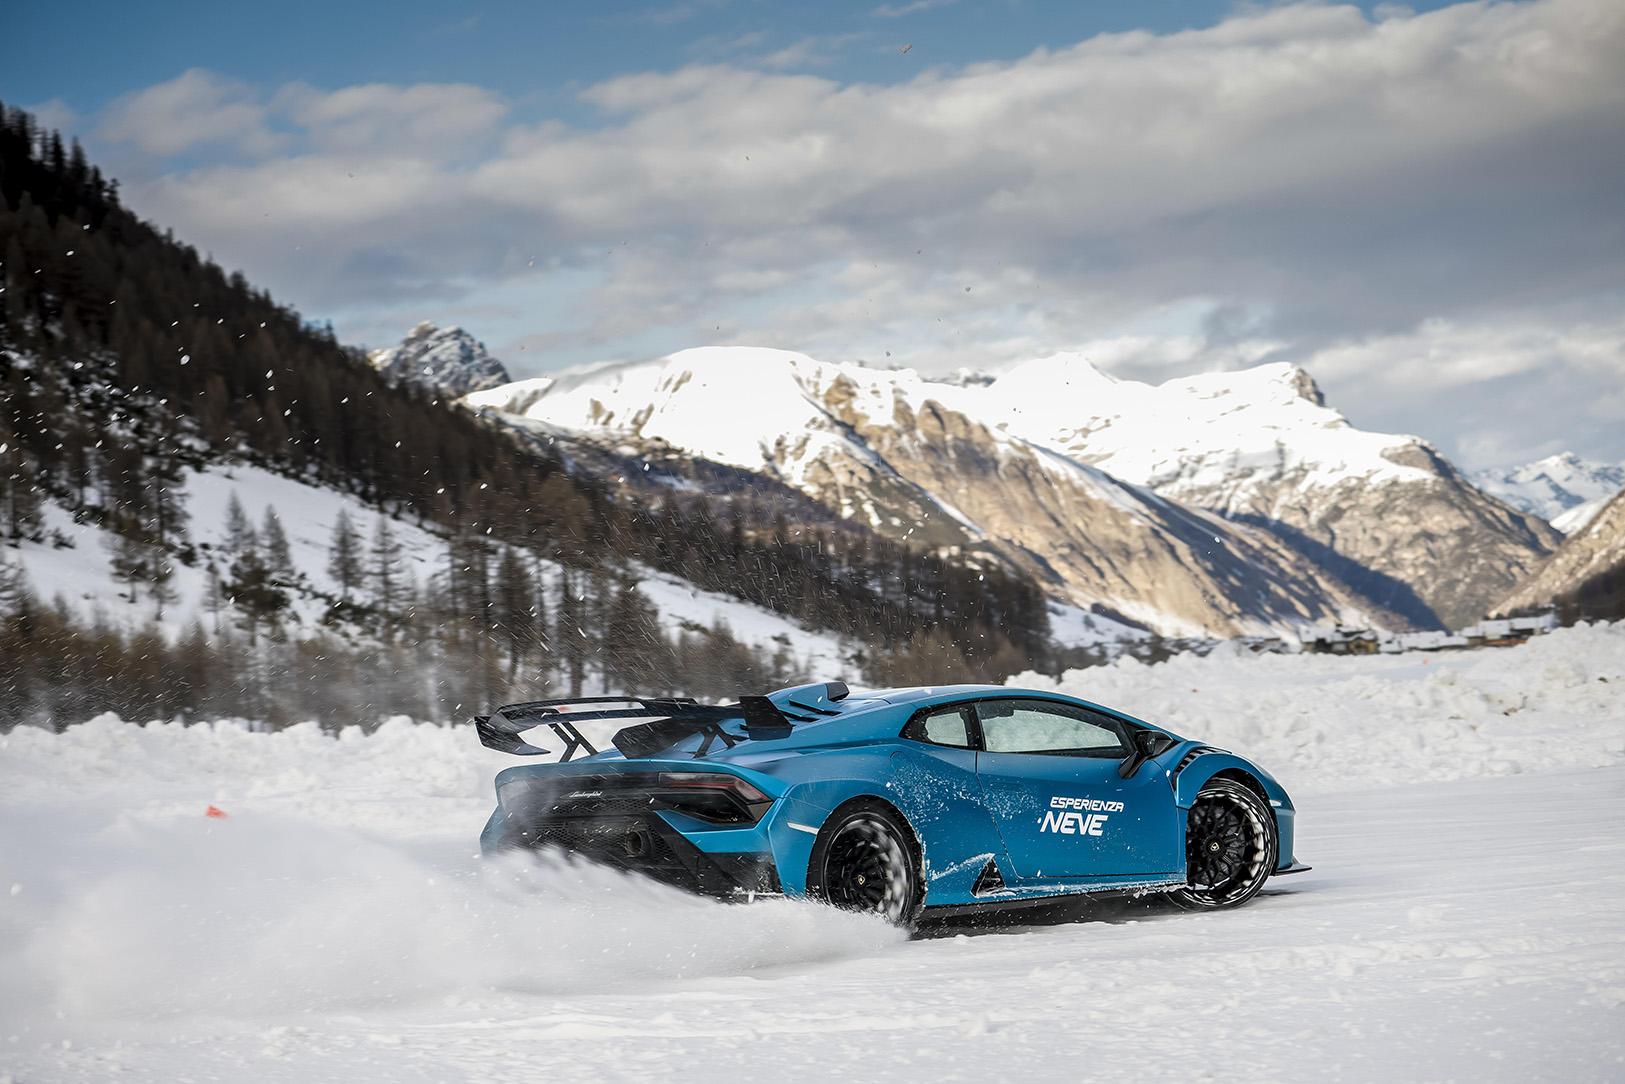 Lamborghini's Winter Driving Experience: Conquering the Ice in Livigno
